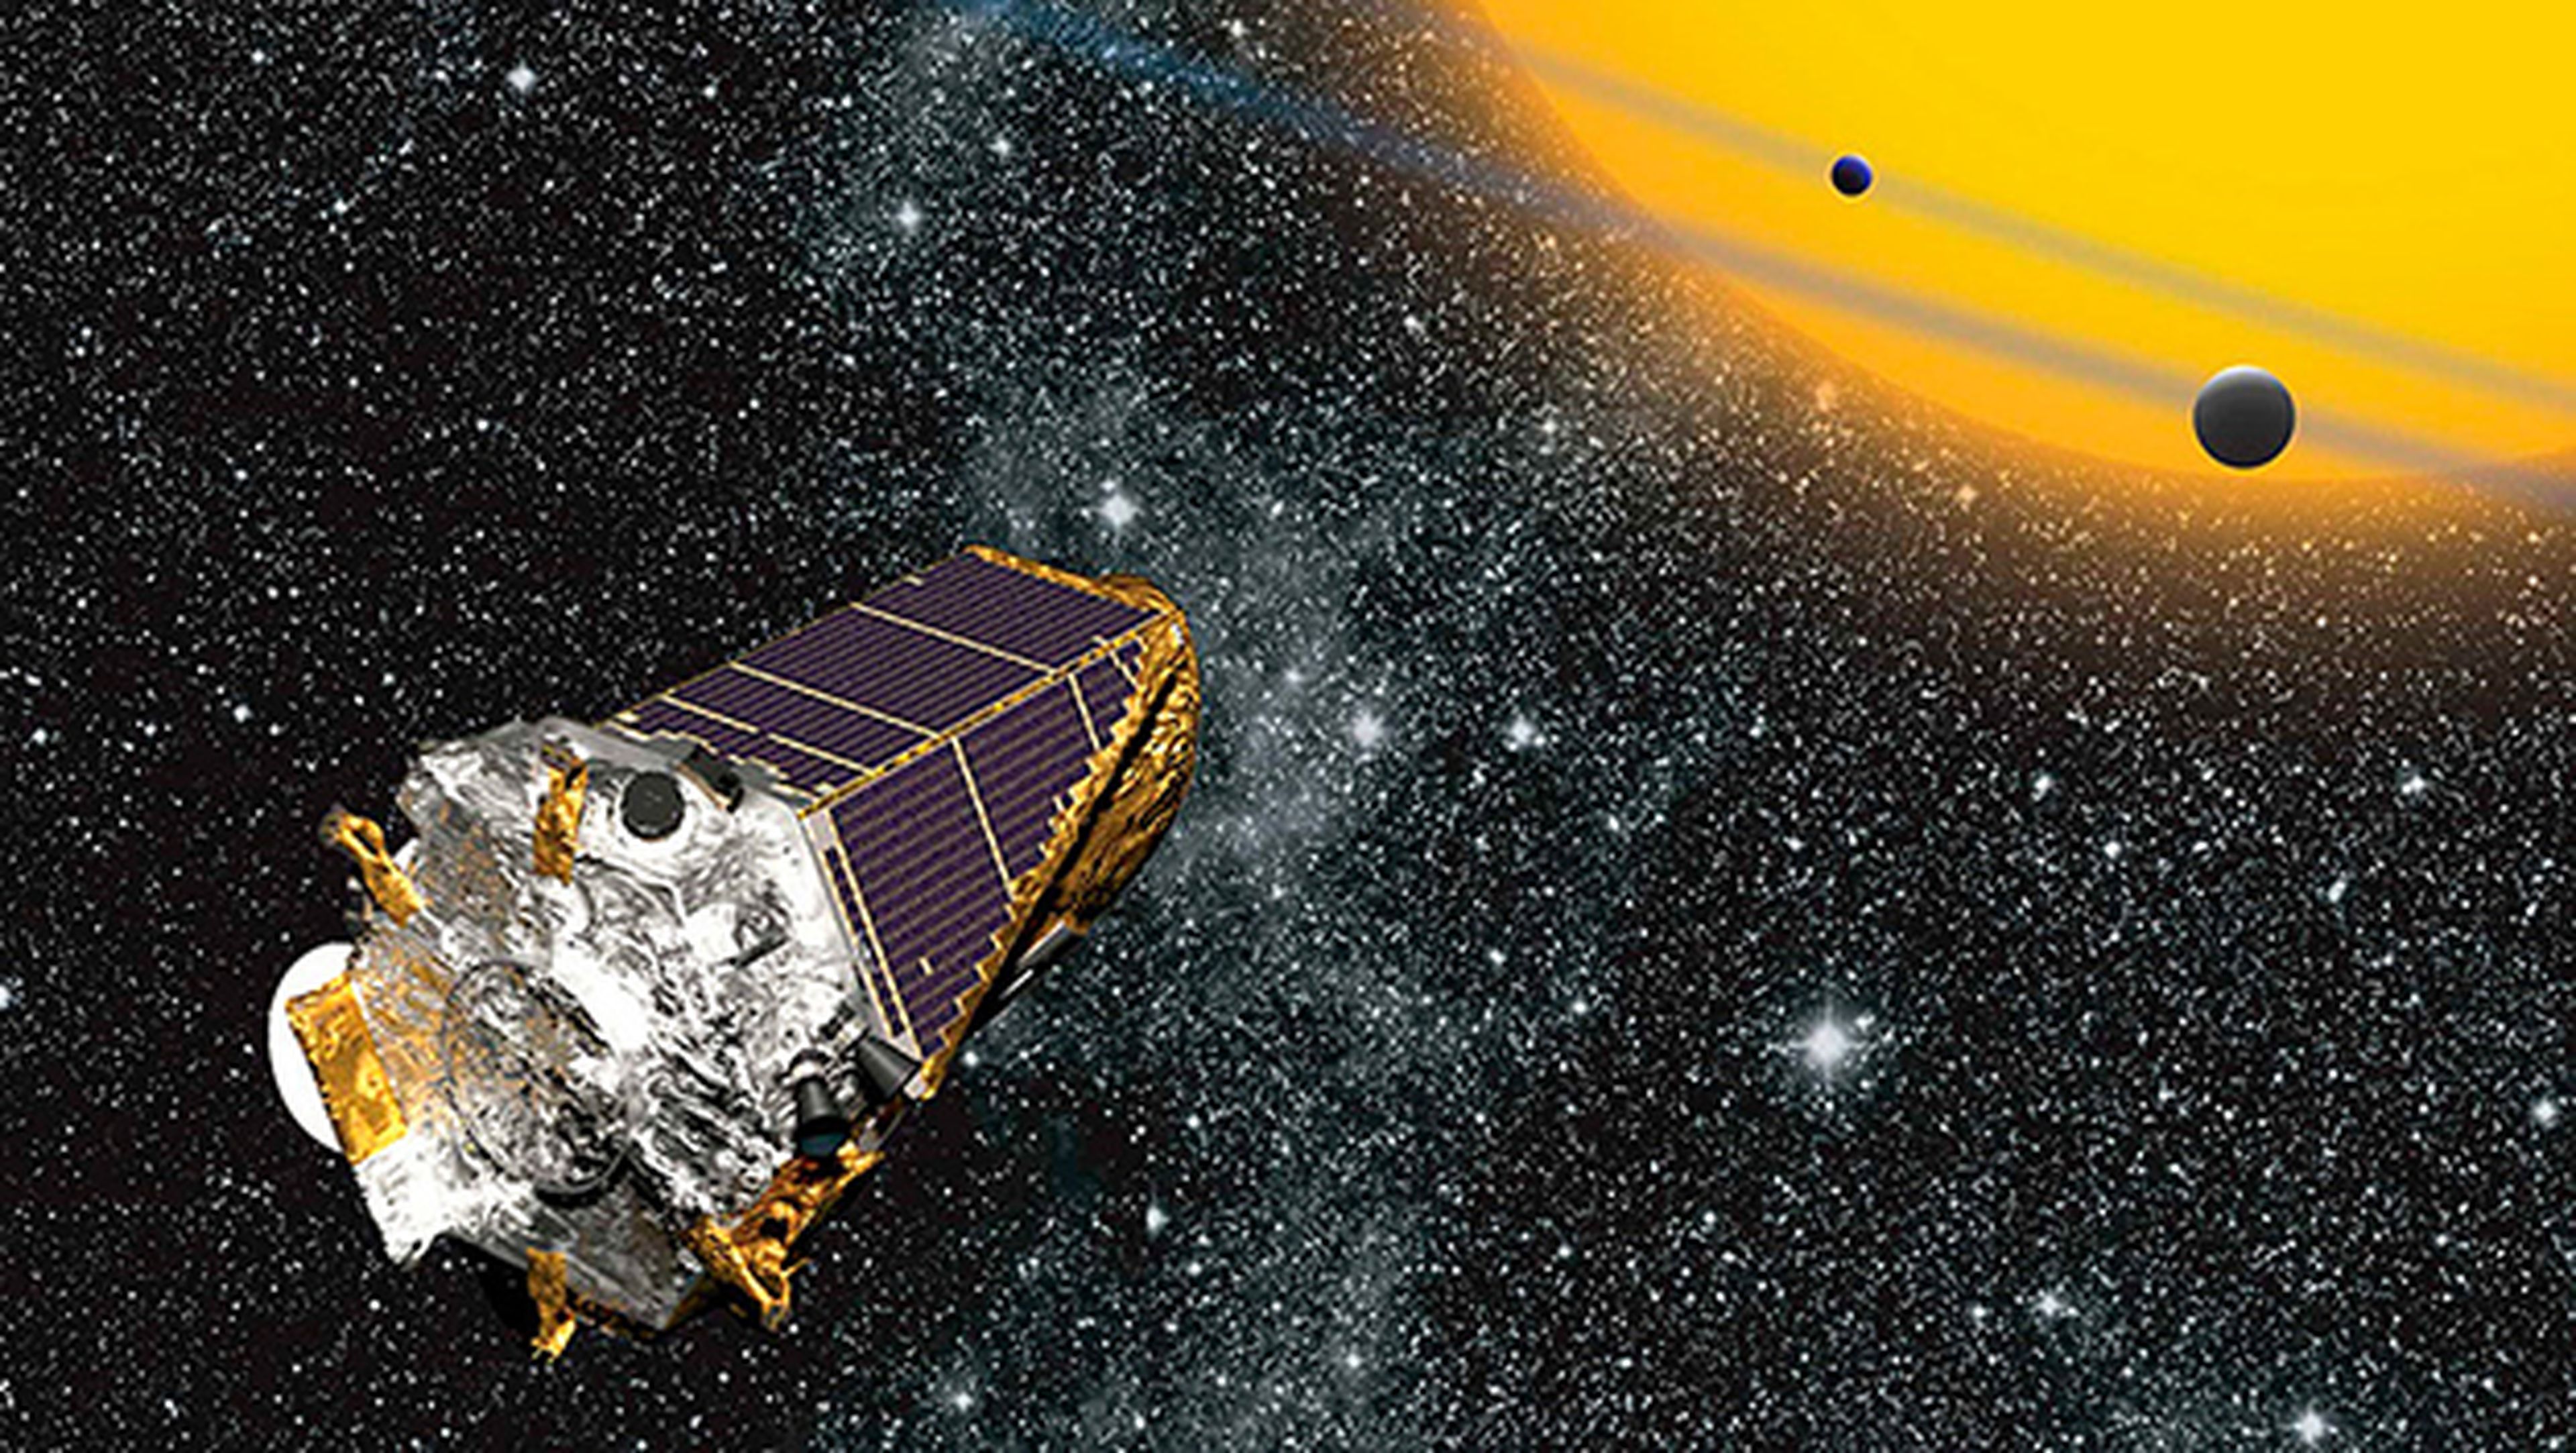 Telescopio Espacial Kepler